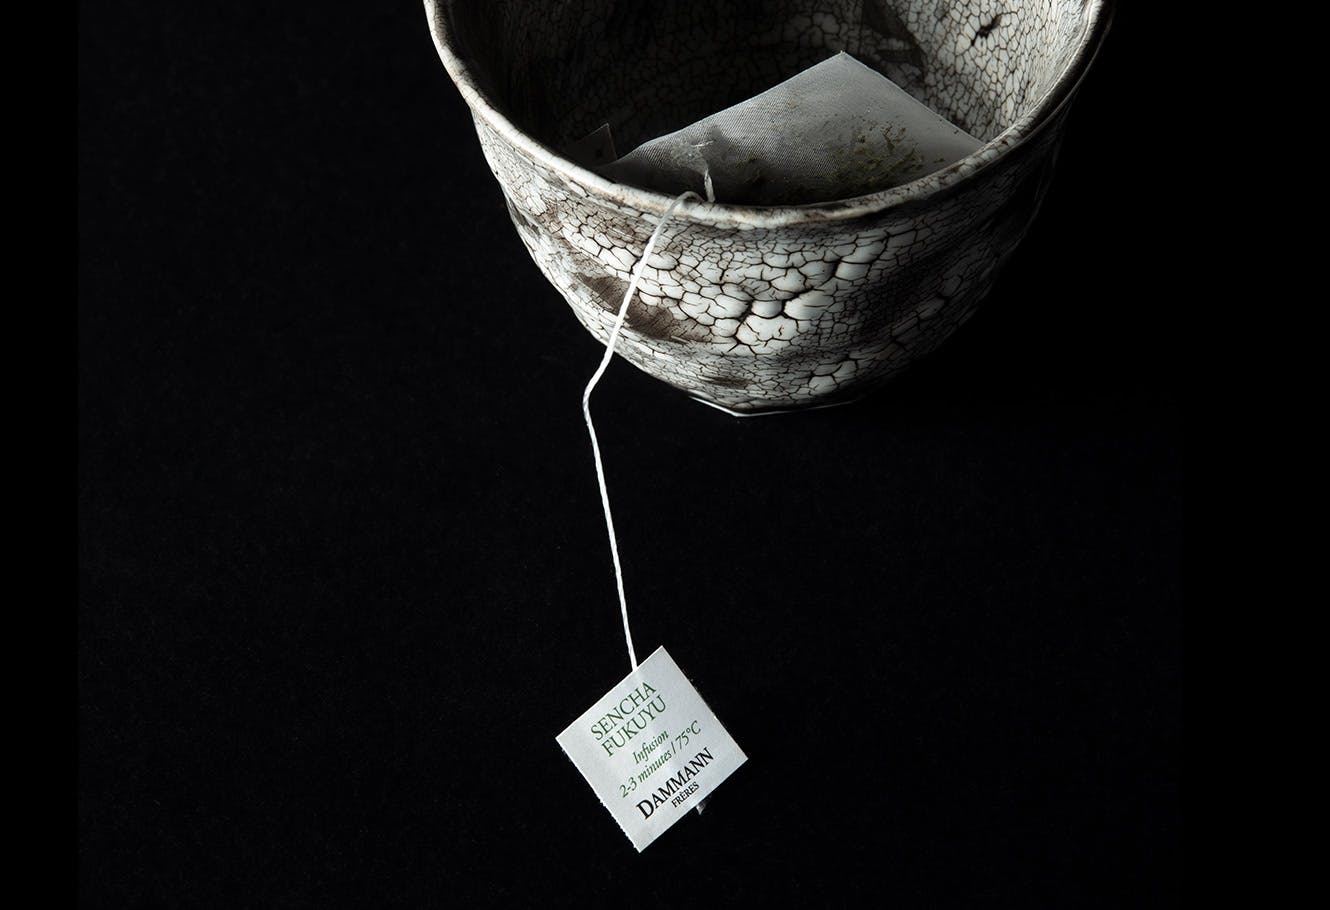 Sachet de thé vert japonais "Sencha Fukuyu" dans une tasse de thé.